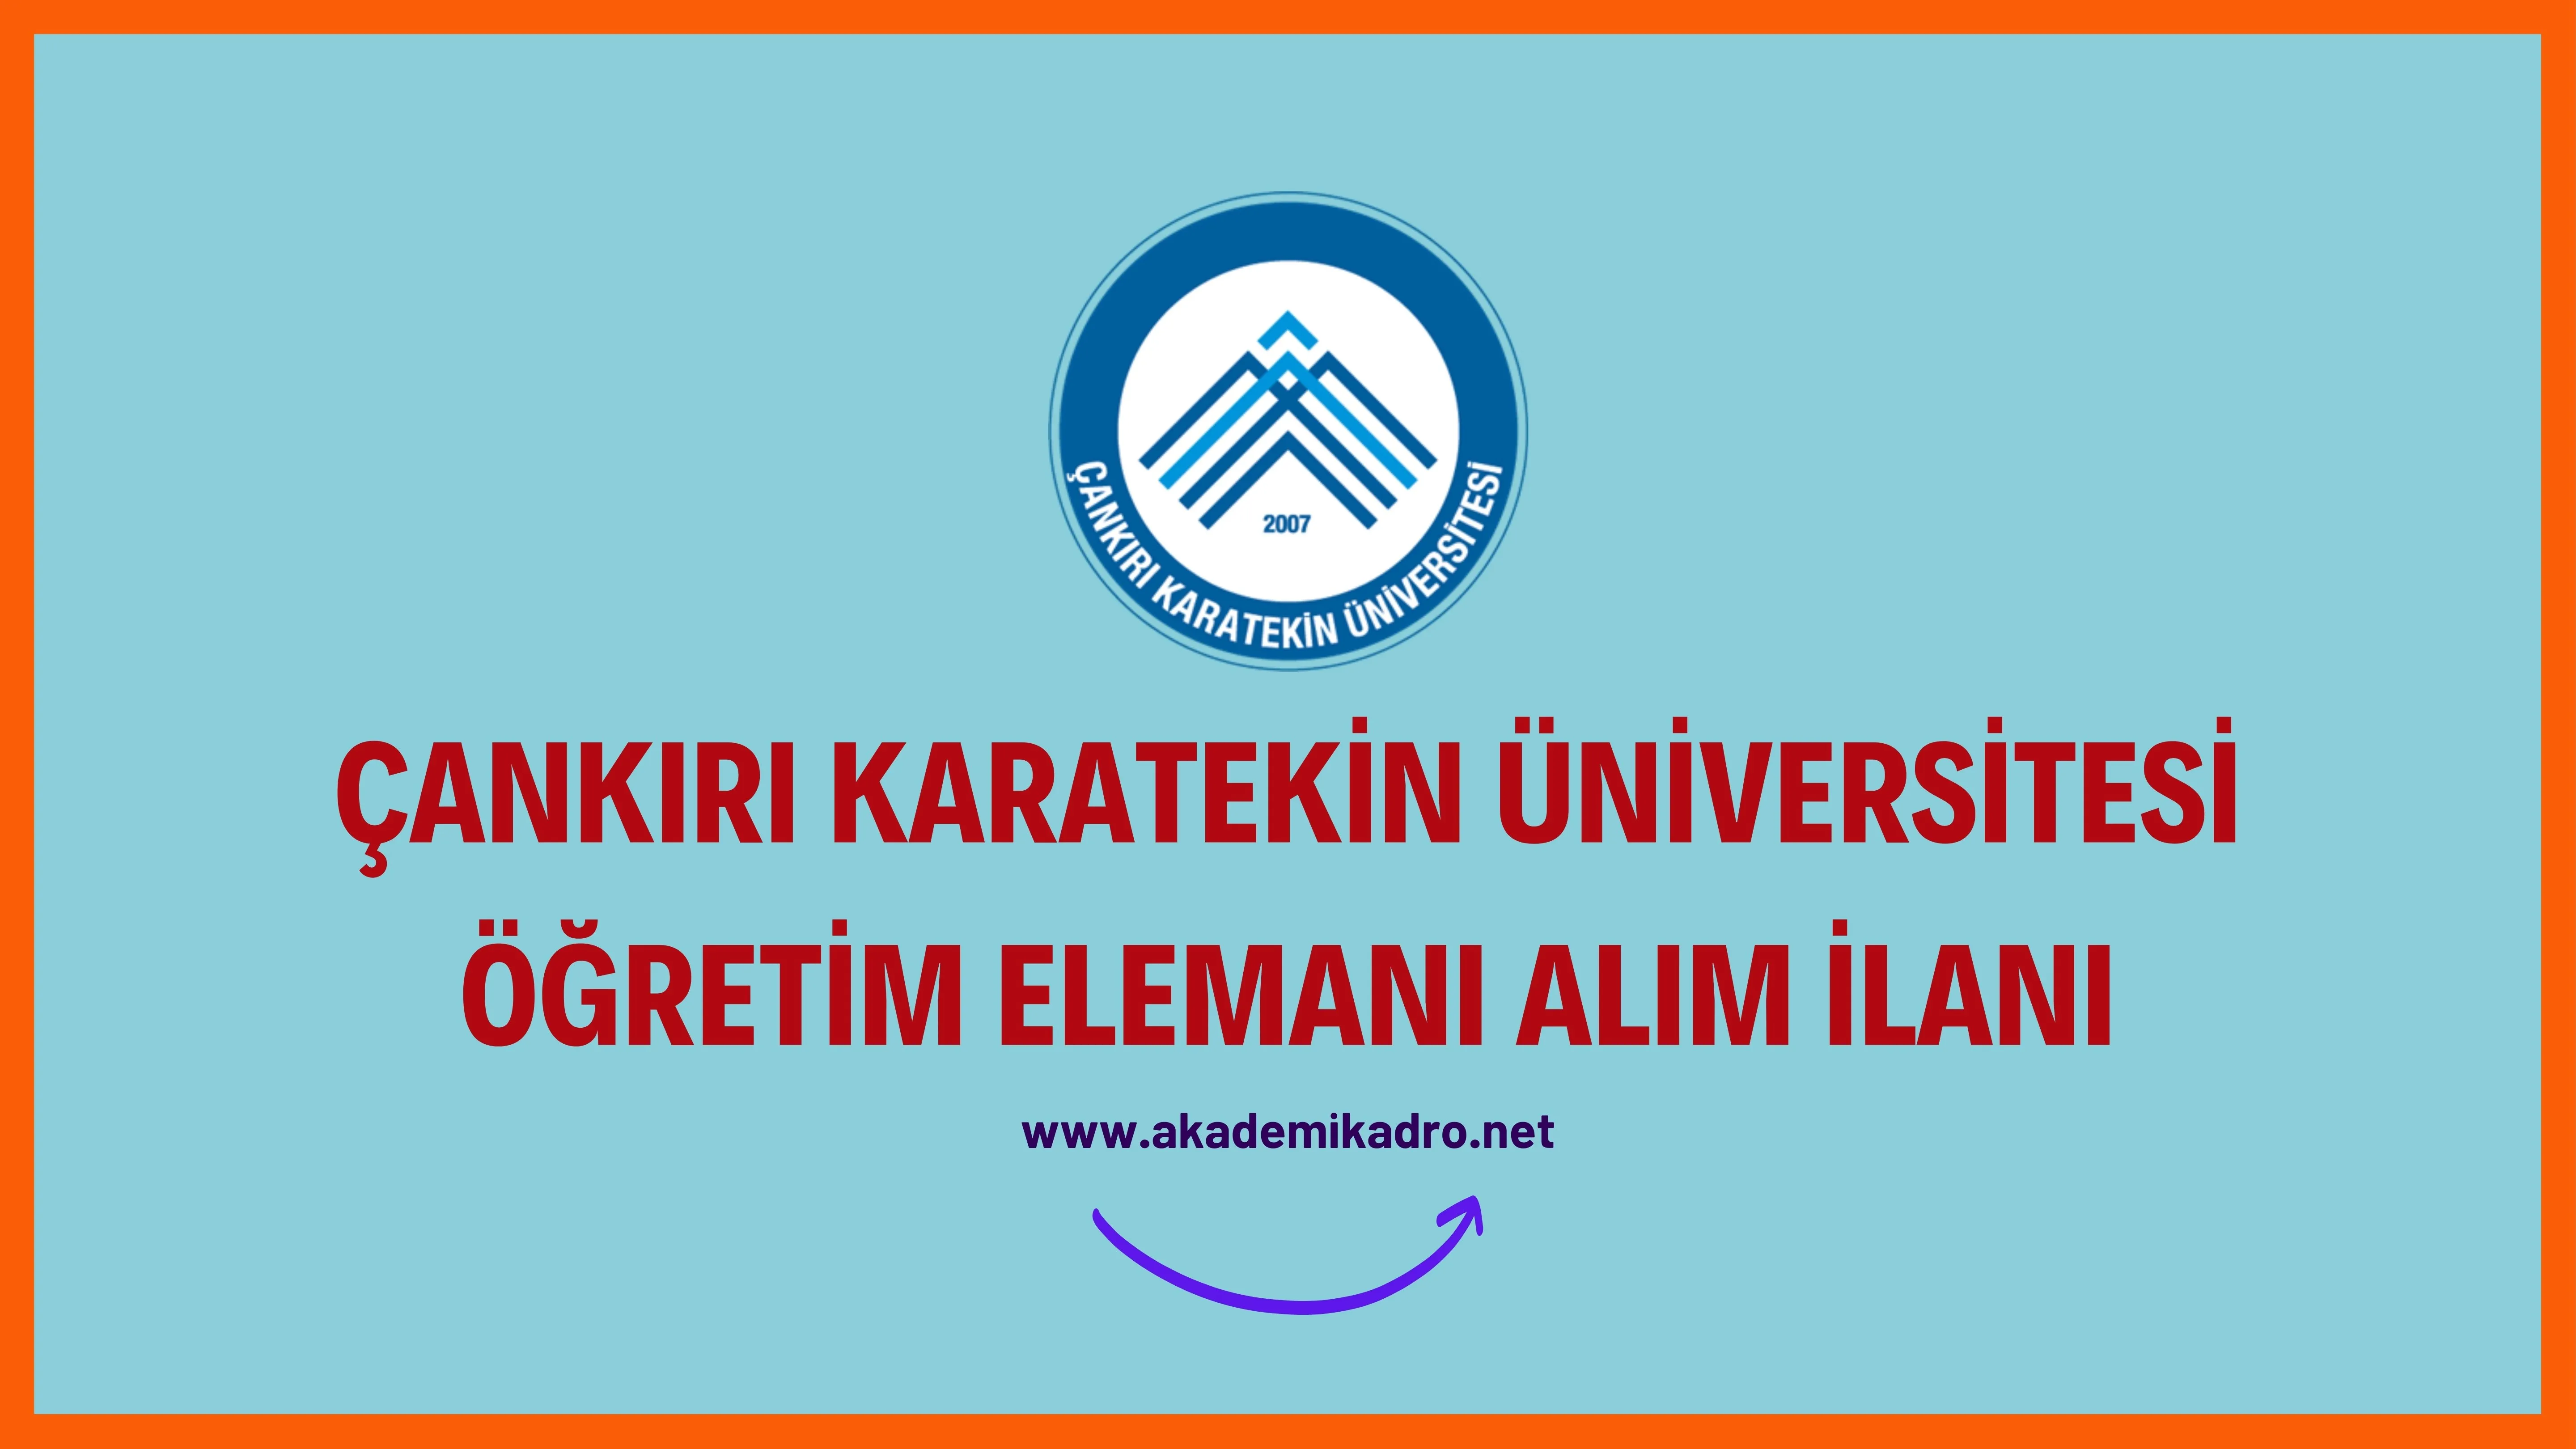 Çankırı Karatekin Üniversitesi 28 öğretim üyesi, 5 öğretim görevlisi ve 3 araştırma görevlisi alacaktır.